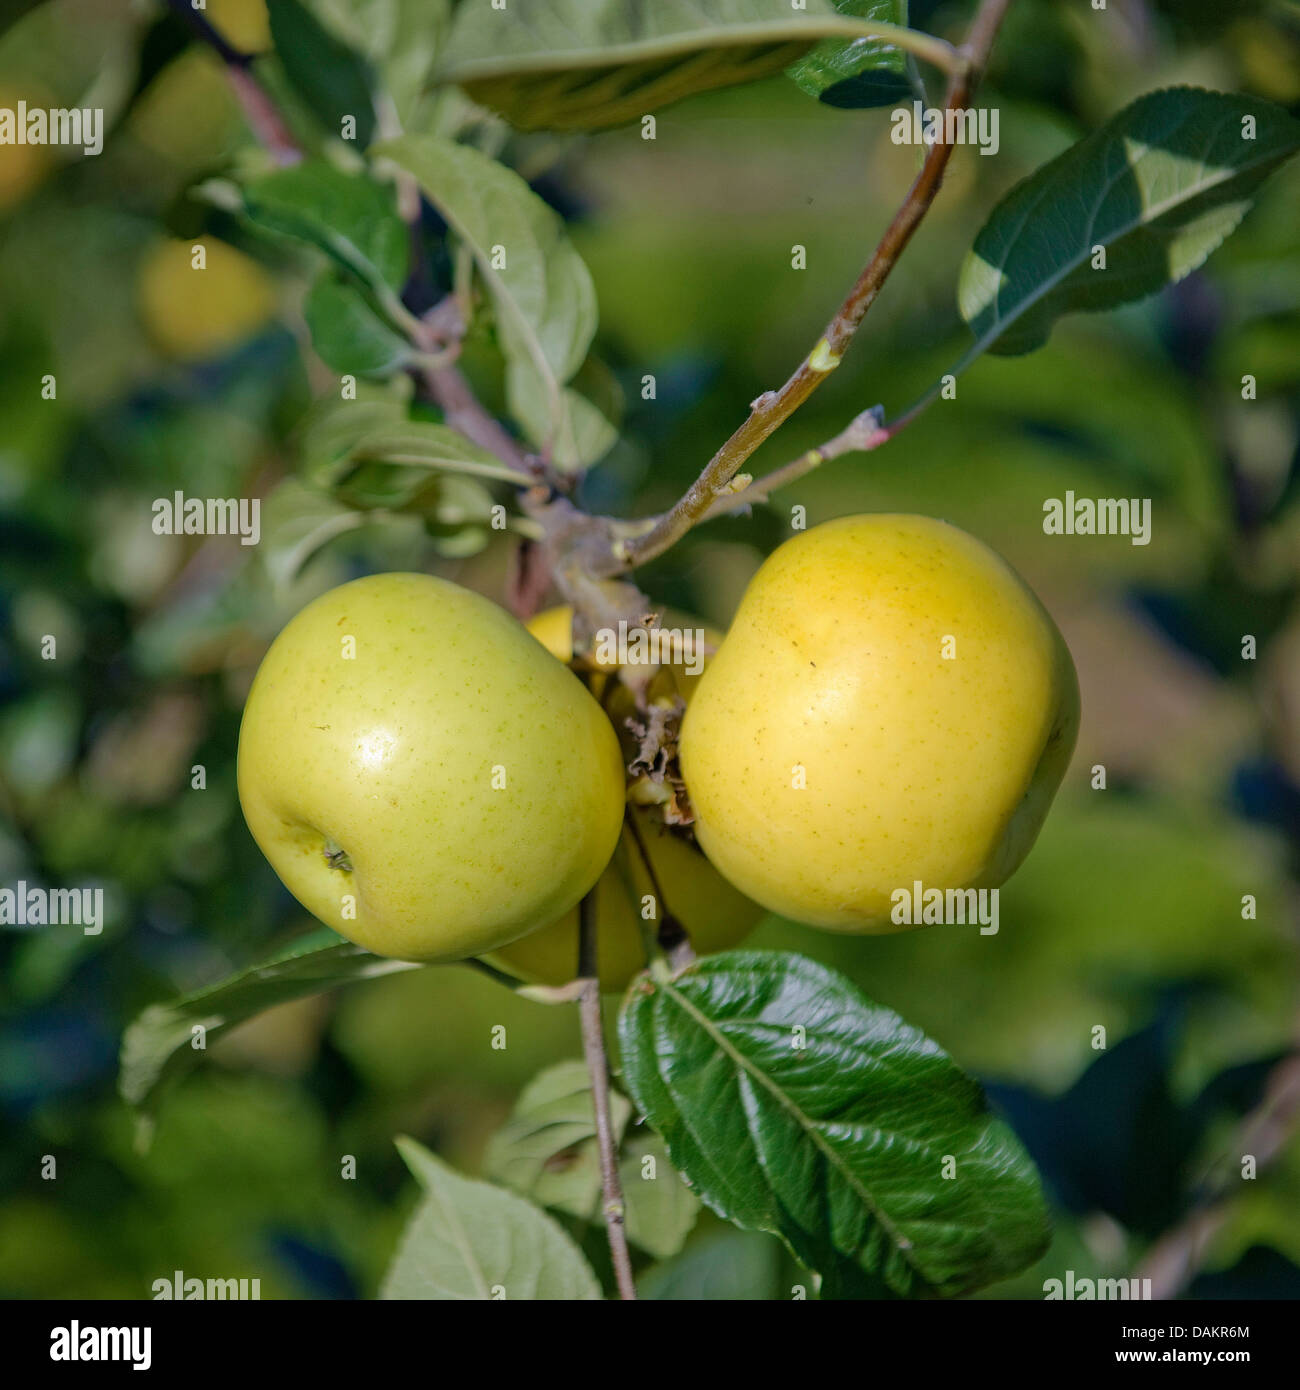 apple tree (Malus domestica 'Engelsberger Renette', Malus domestica Engelsberger Renette), cultivar Engelsberger Renette Stock Photo